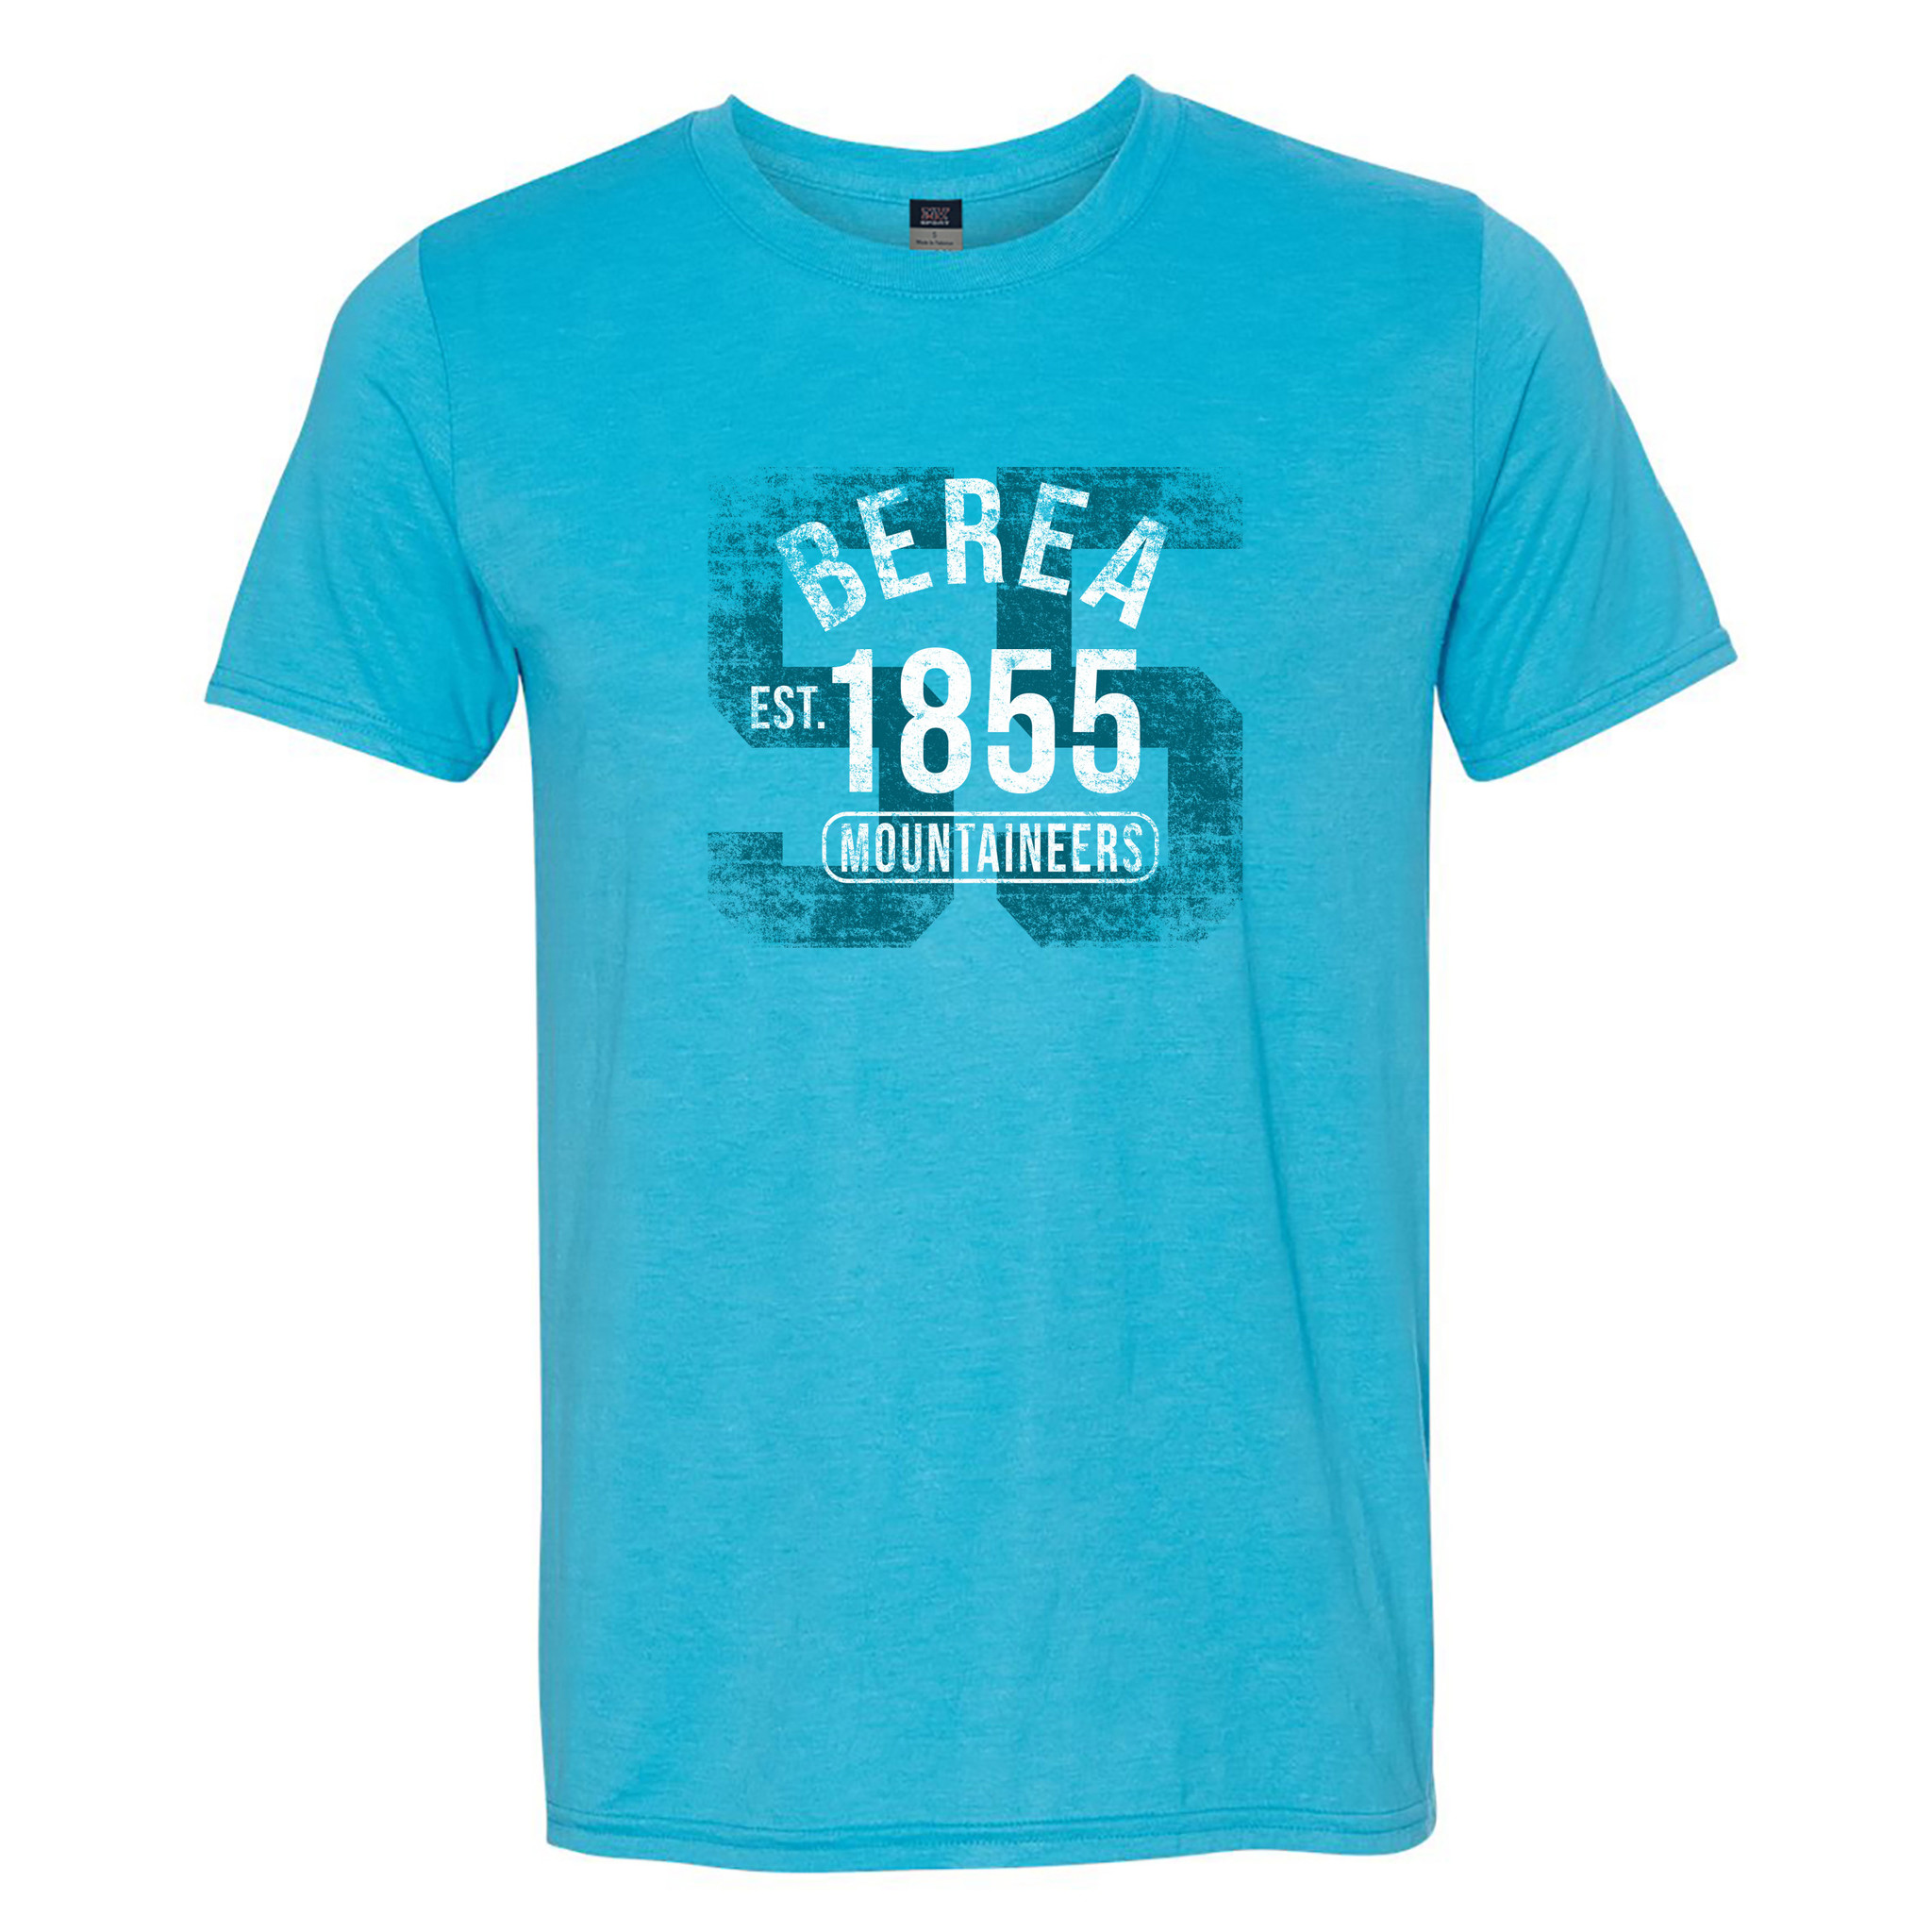 Berea Est 1855 Mountaineers T-Shirt-2